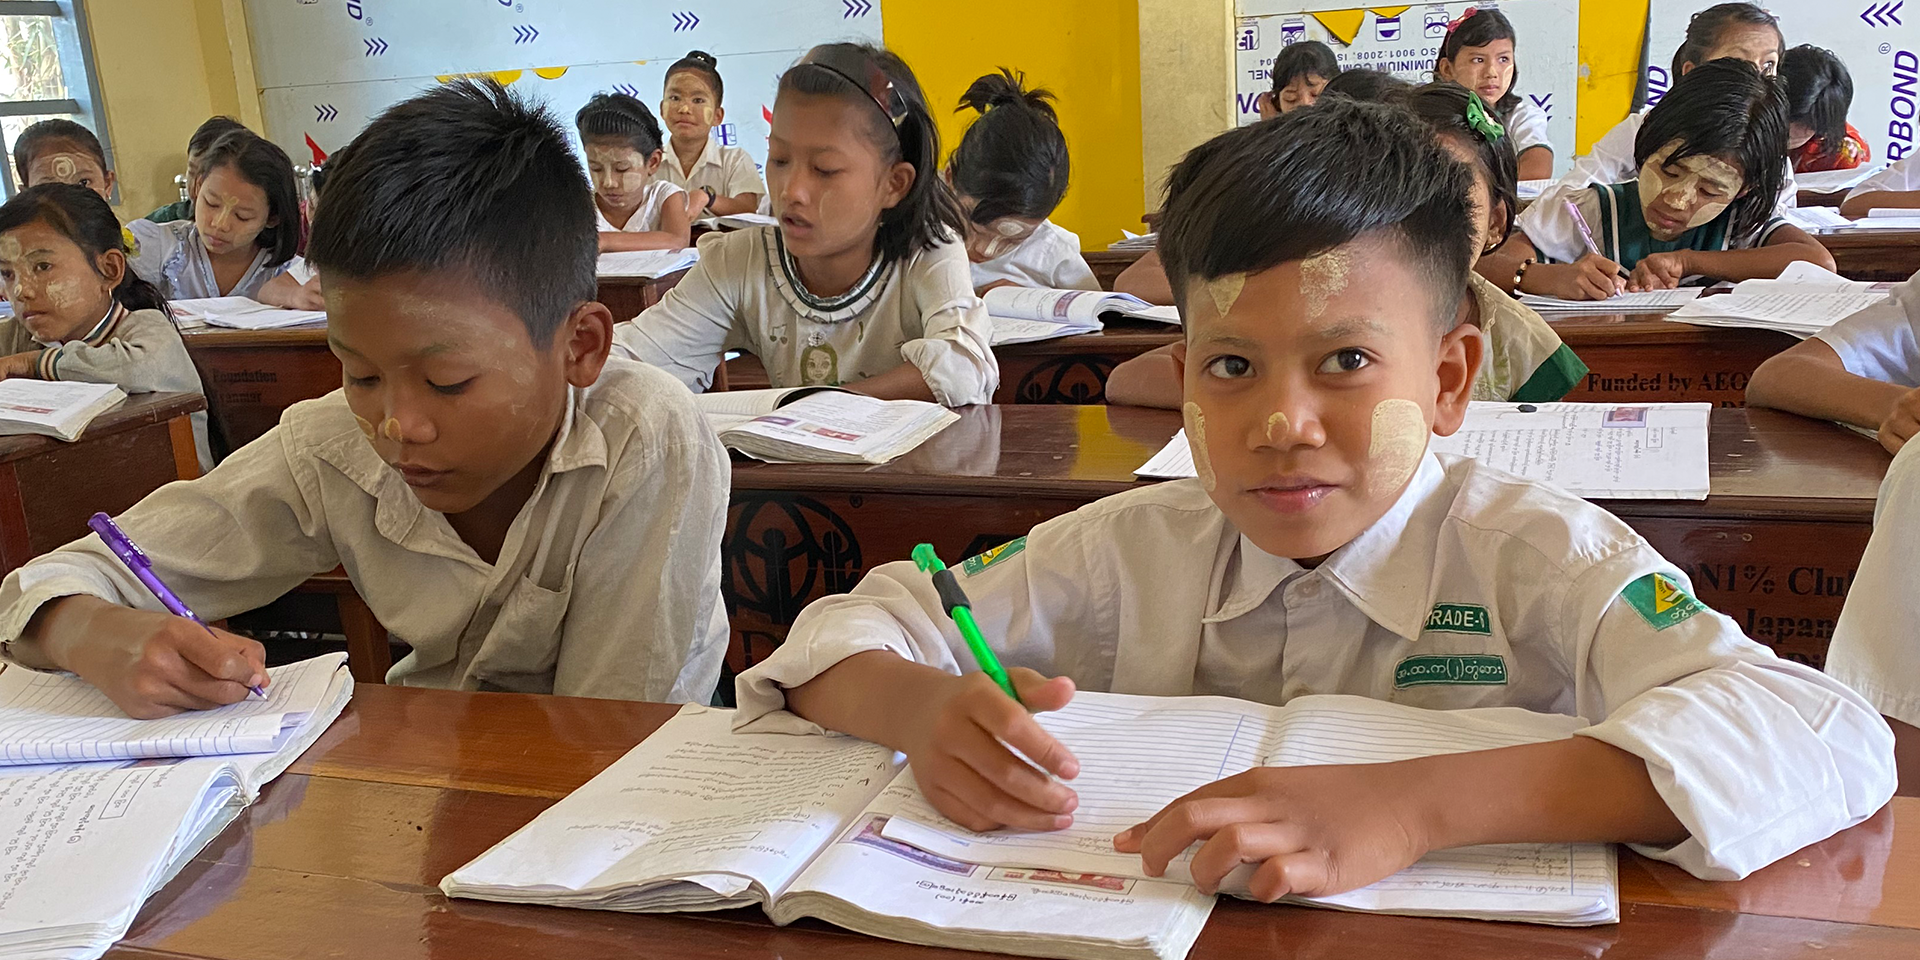 学校建設支援事業 「平和な社会の実現には基礎教育の充実が不可欠」という想いのもと、教育施設の整備が遅れているアジア５カ国において、２０００年より学校建設支援を行っています。全国から寄せられた募金とイオンワンパーセントクラブからの拠出金を活用し、カンボジア、ネパール、ラオス、ベトナム、ミャンマーにおいてこれまでに４２６校の学校が完成しました。校舎の建設や給水施設の整備、学用品のほか、教員の養成など、ソフト面での支援も行っています。